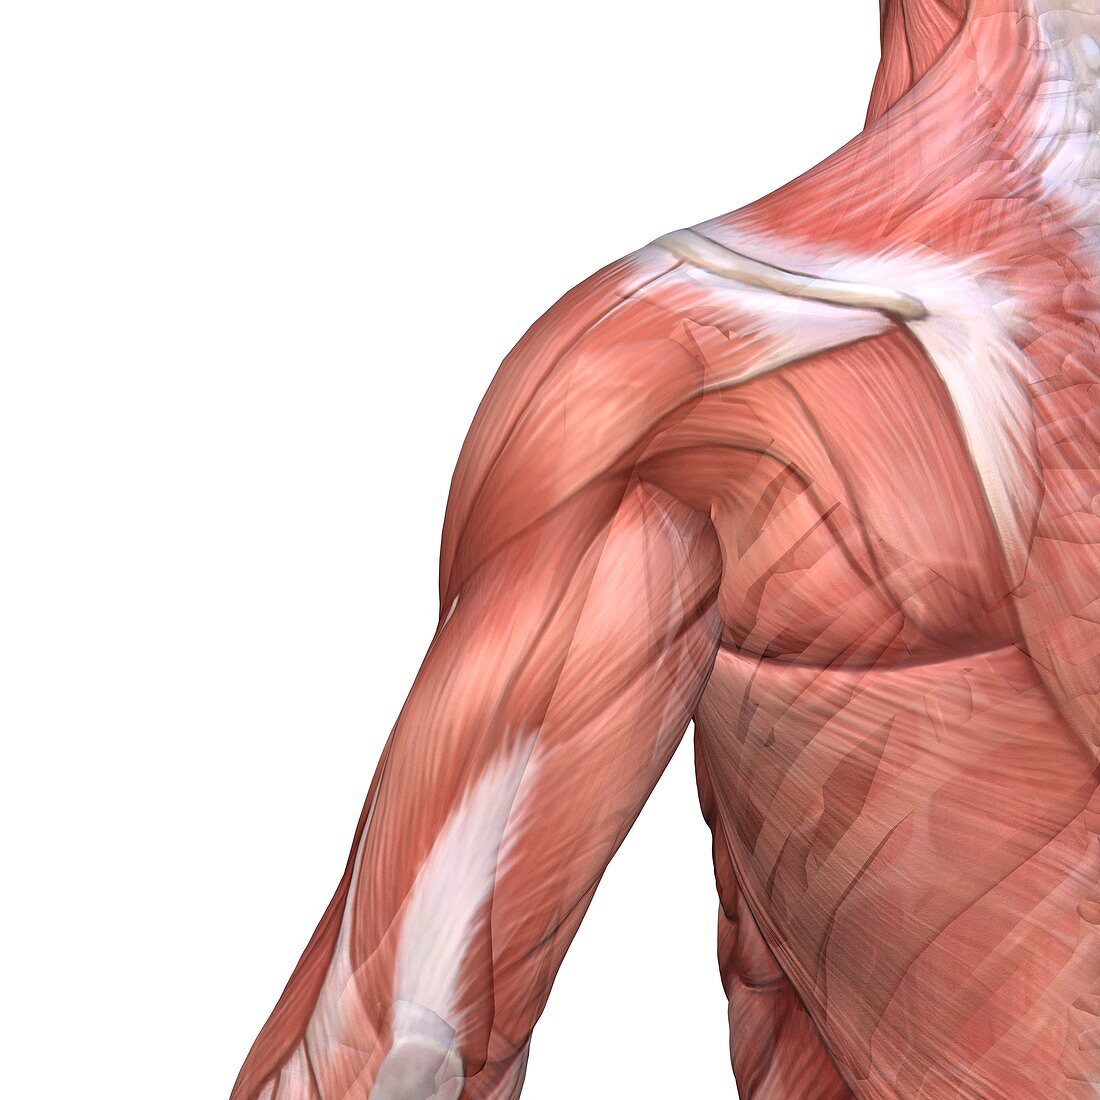 Shoulder and back anatomy,artwork